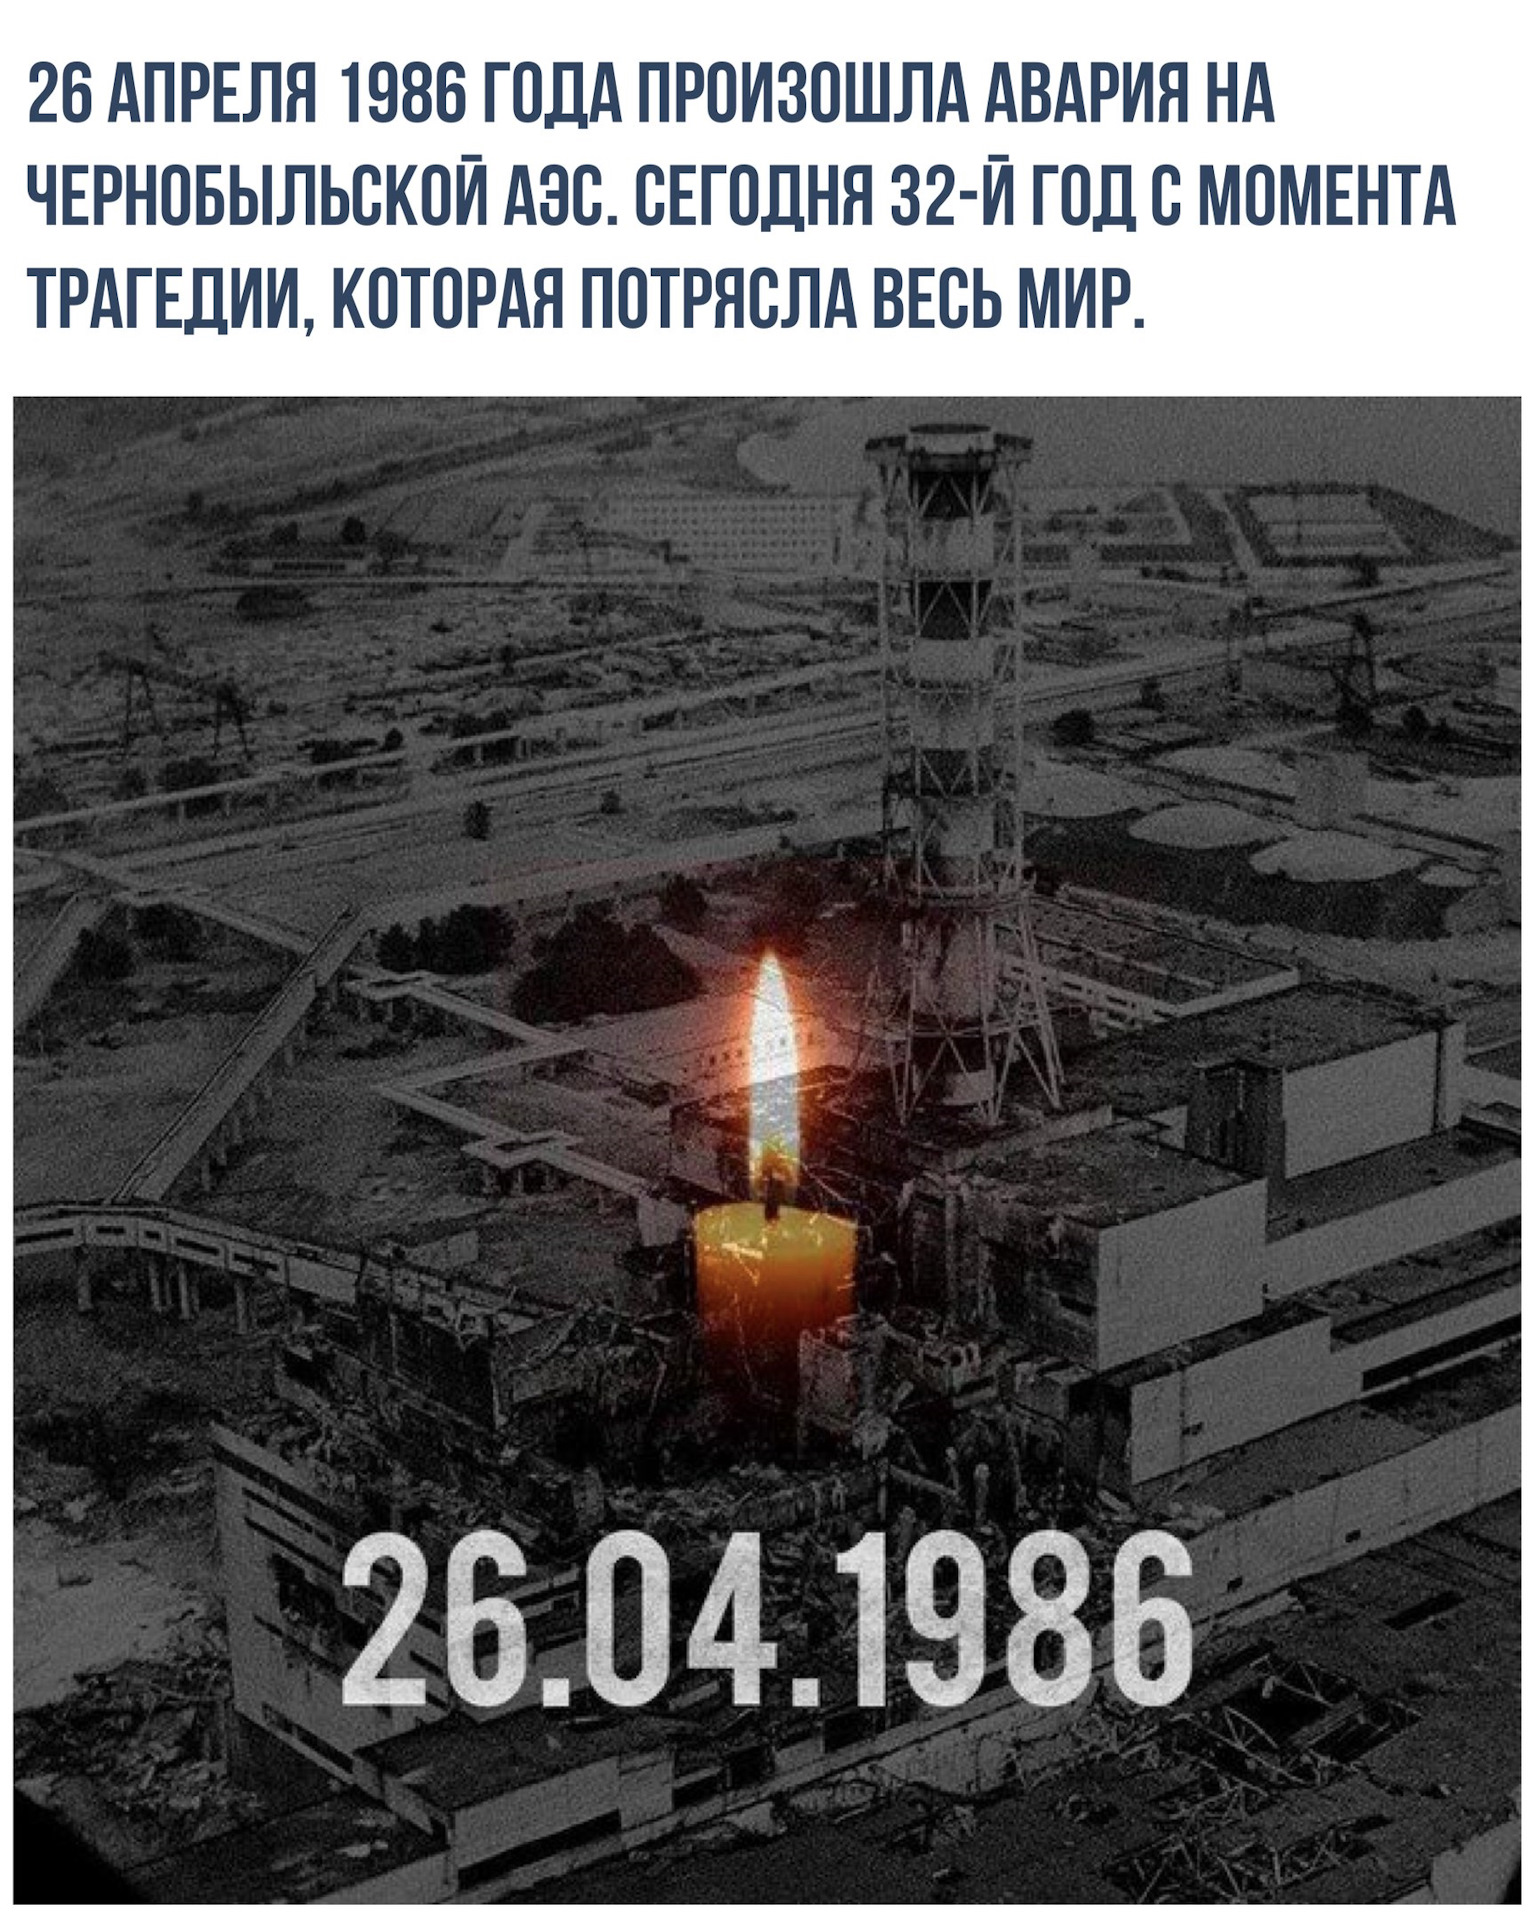 Чернобыль апрель 1986. Чернобыль 26 апреля 1986. Катастрофа на Чернобыльской АЭС 26 апреля 1986 года. 26 Апреля 1986 года Чернобыльская АЭС. Чернобыль 1986 год 25 апреля.